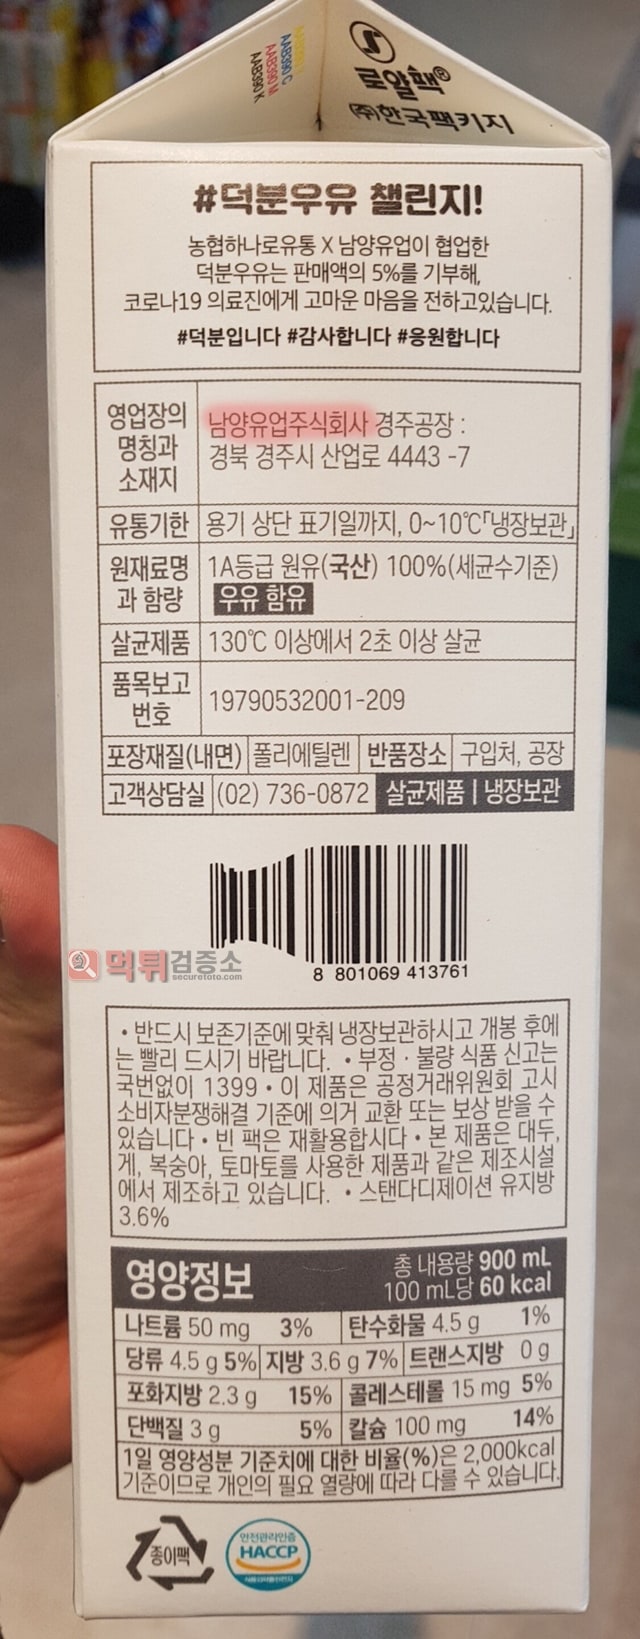 먹튀검증소 유머 코로나19 의료진을 위한 '덕분우유' 출시